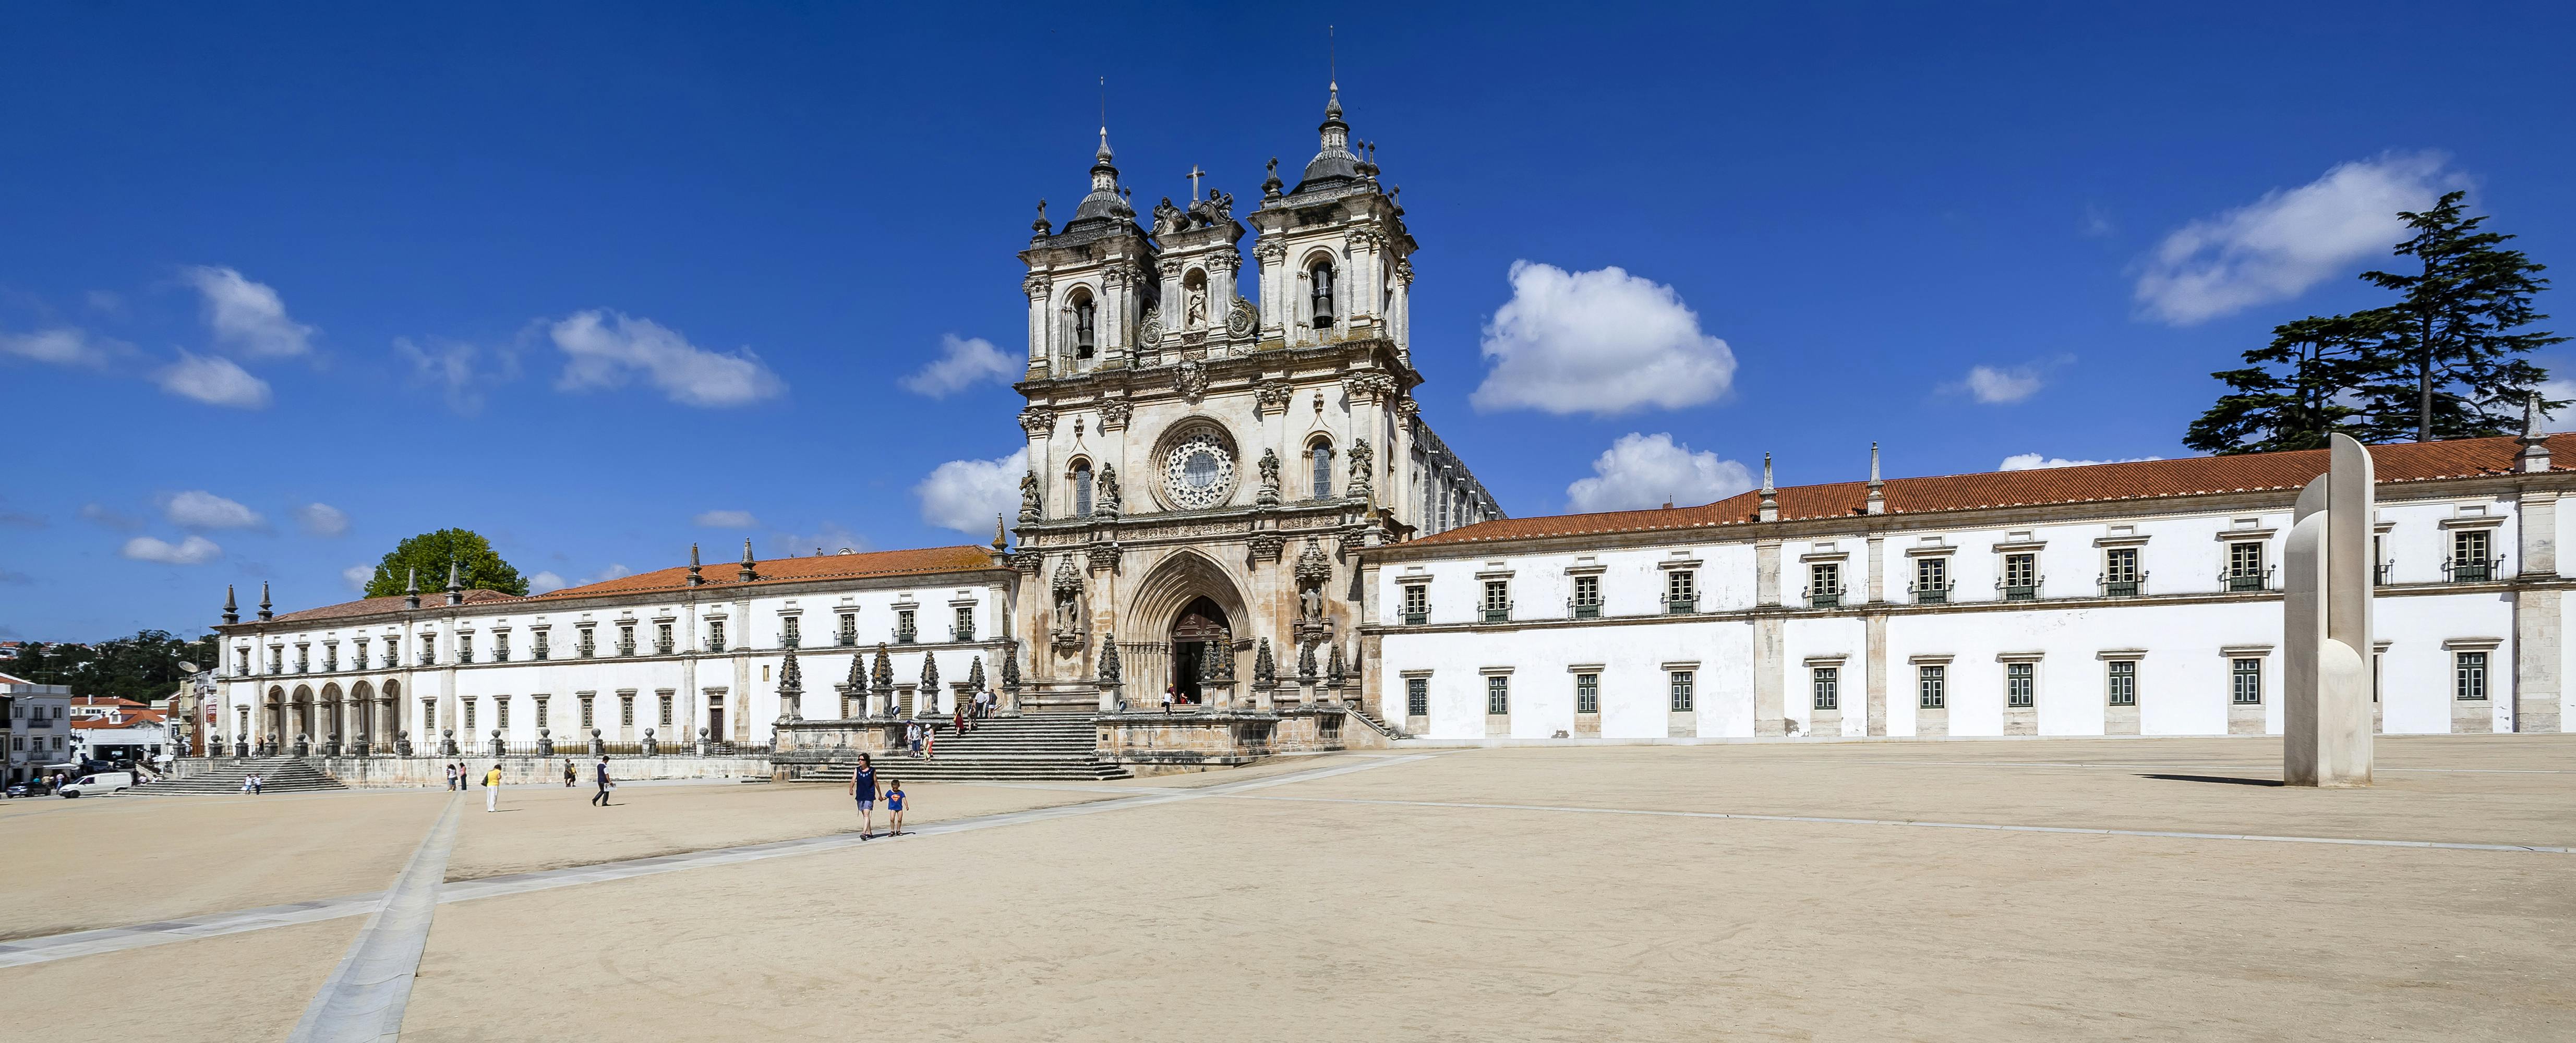 Fátima, Batalha, Alcobaça, Nazaré and Óbidos private tour from Lisbon